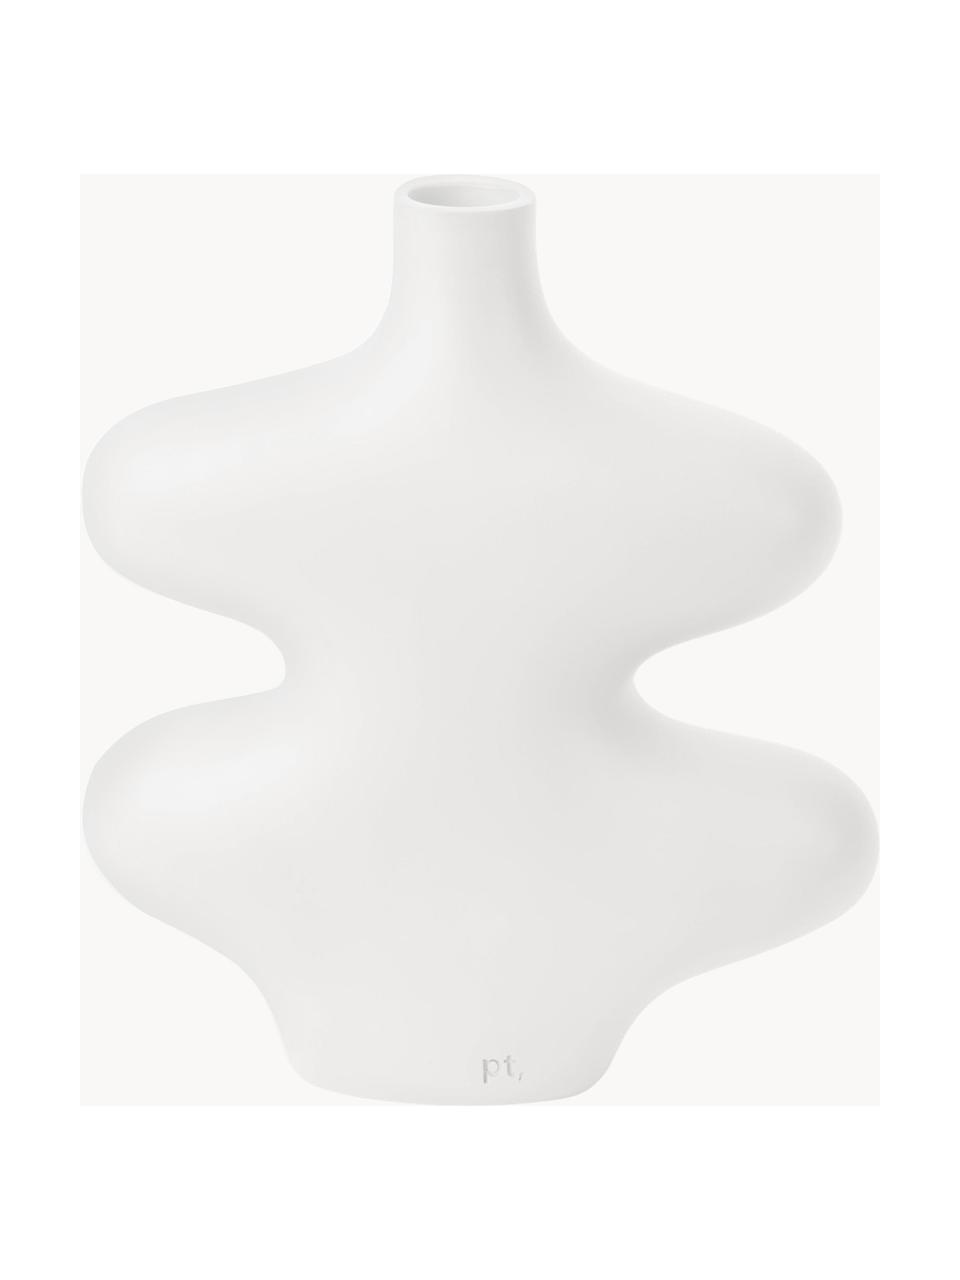 Vase Organic Curves in organischer Form, H 21 cm, Polyresin, Weiß, B 18 x H 21 cm